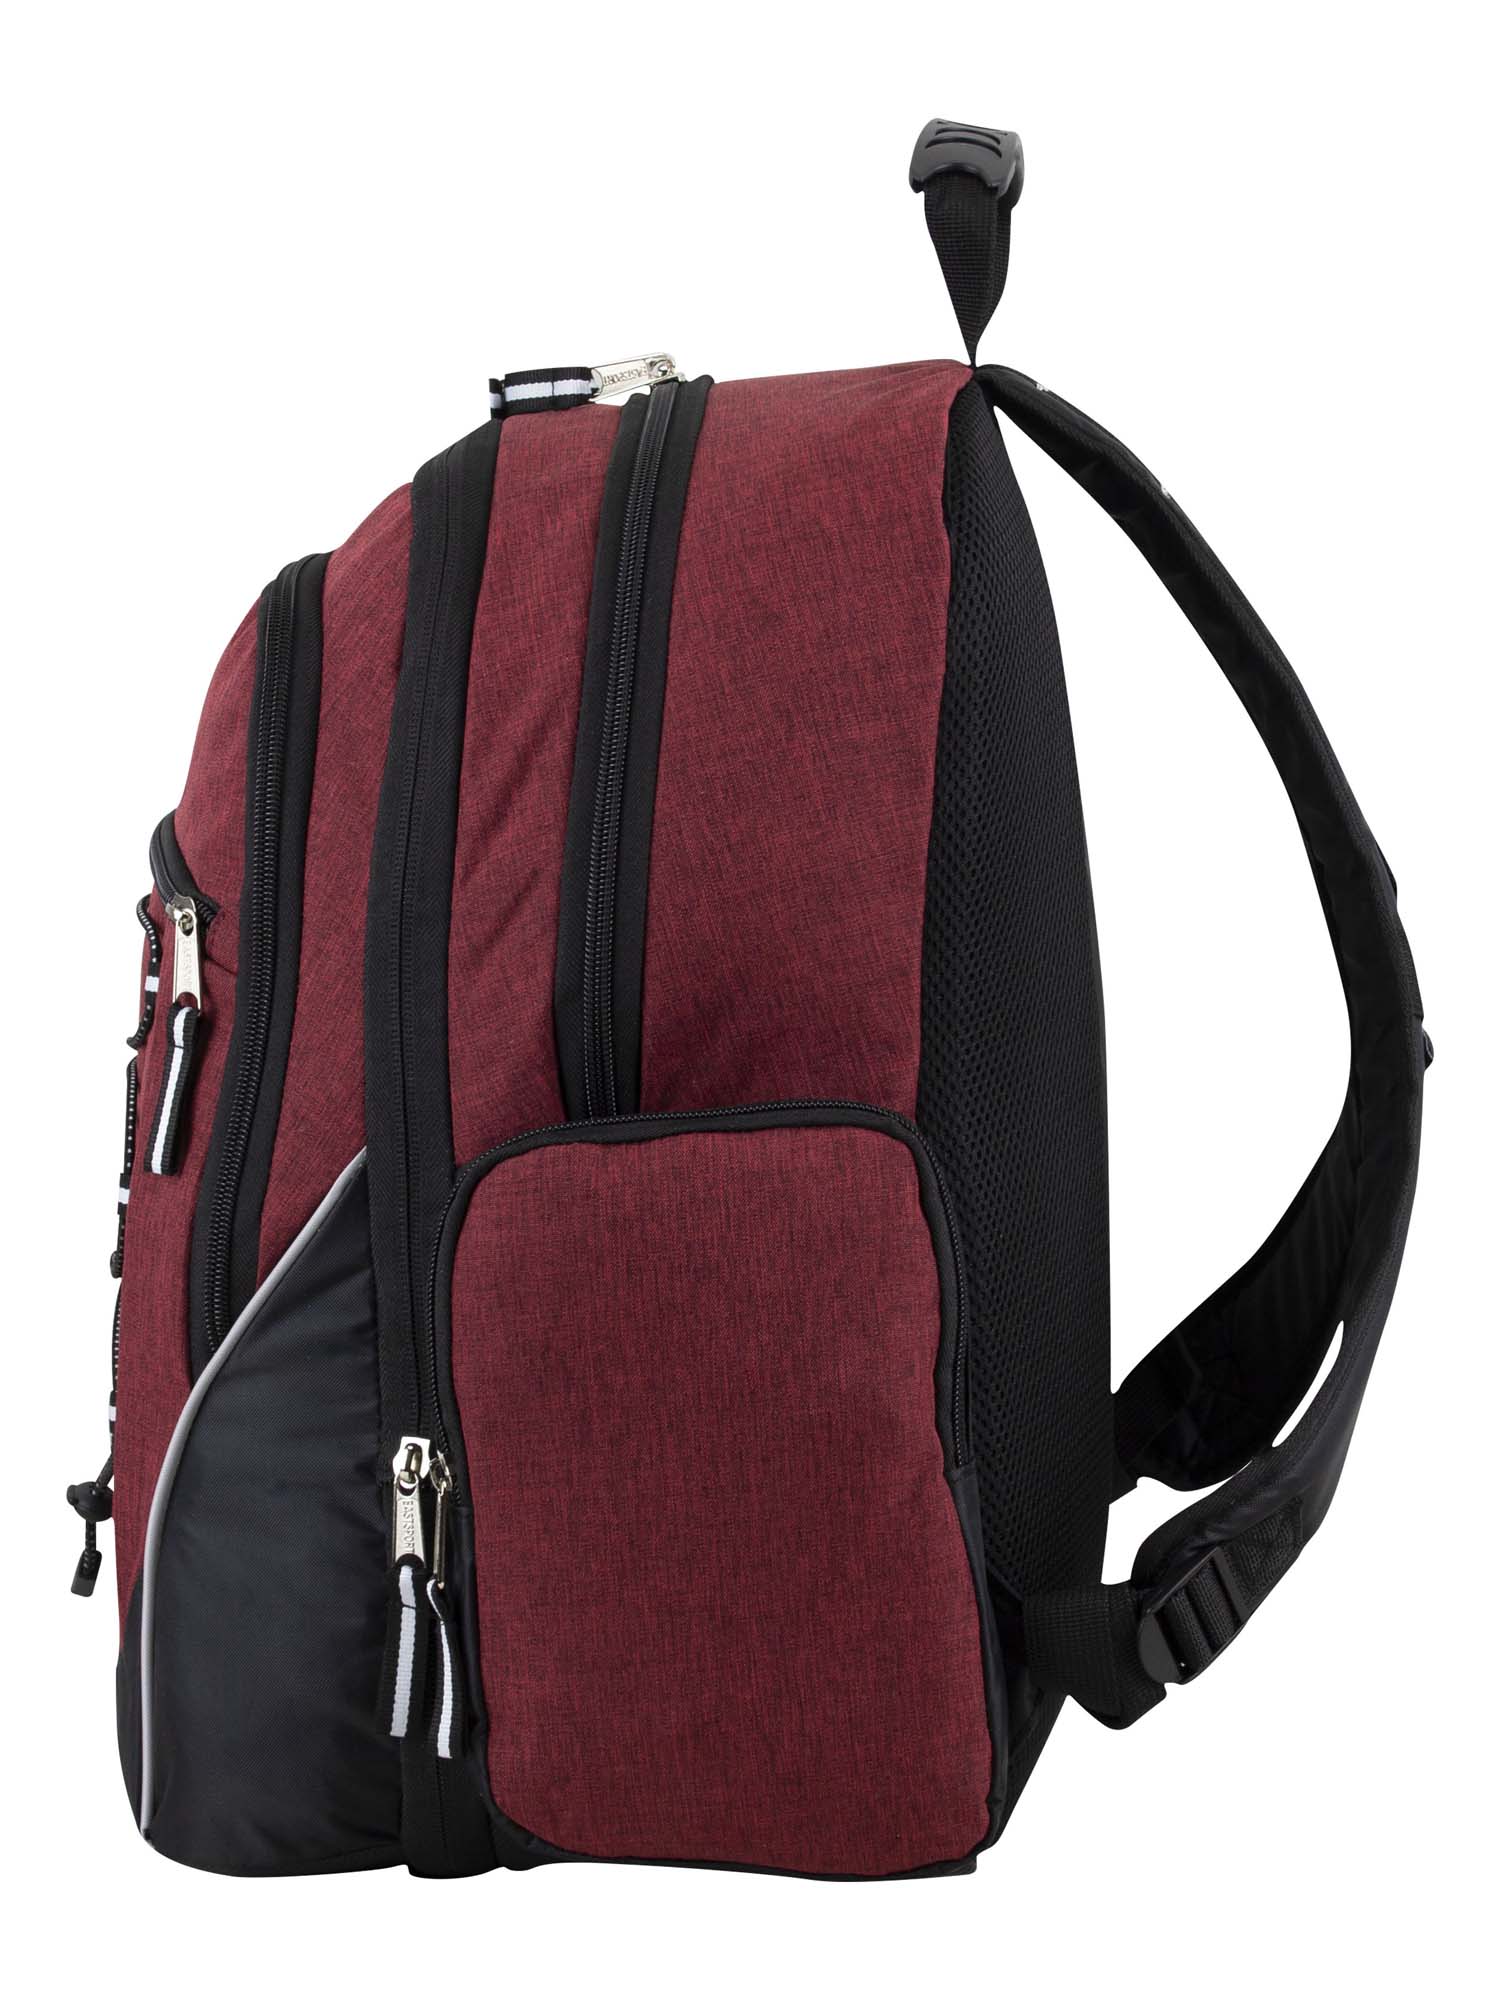 Eastsport Optimus Backpack, Maroon - image 2 of 7